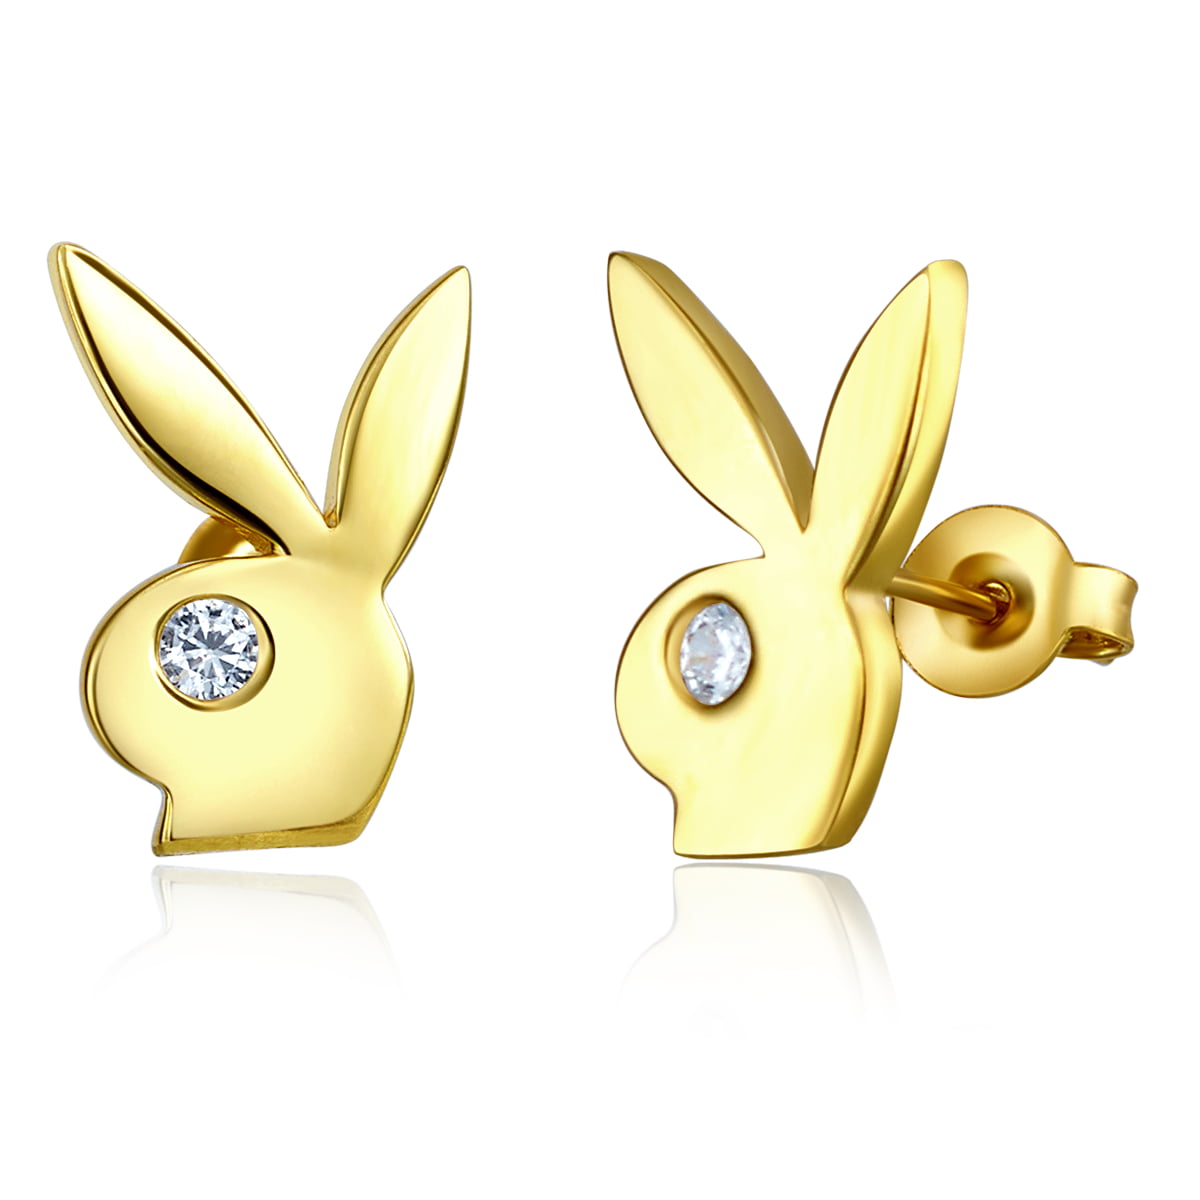 Wellingsale Ladies 14k Yellow Gold Polished CZ Bunny Rabbit Earrings ...